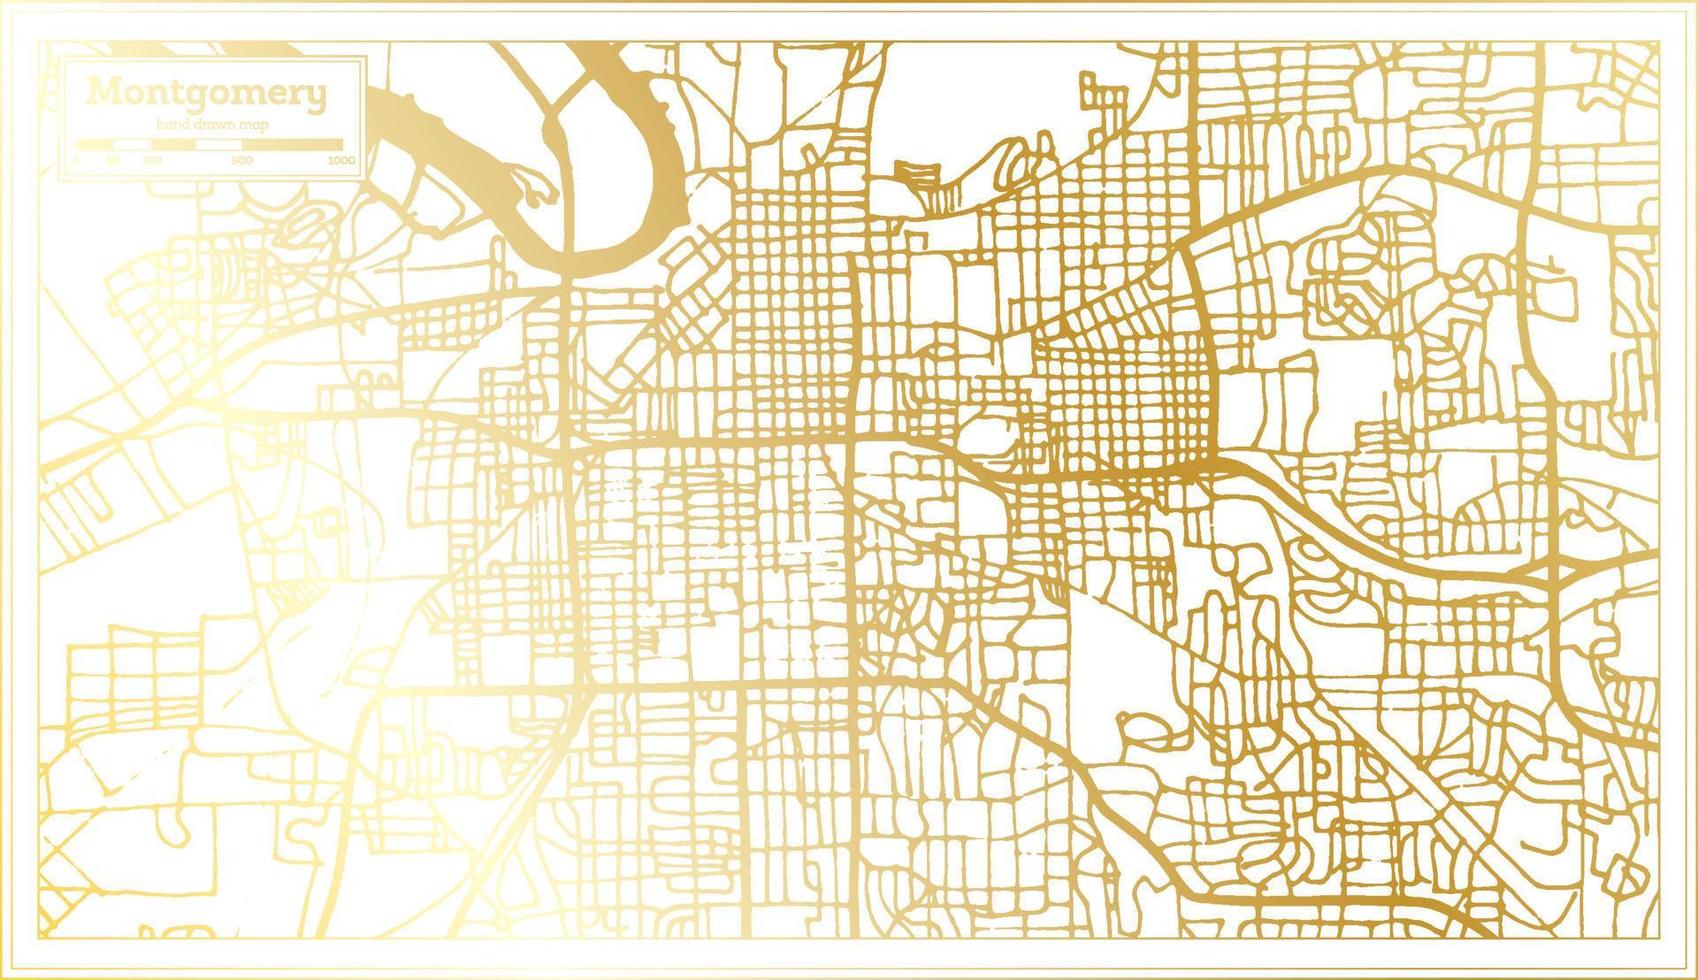 montgomery Verenigde Staten van Amerika stad kaart in retro stijl in gouden kleur. schets kaart. vector